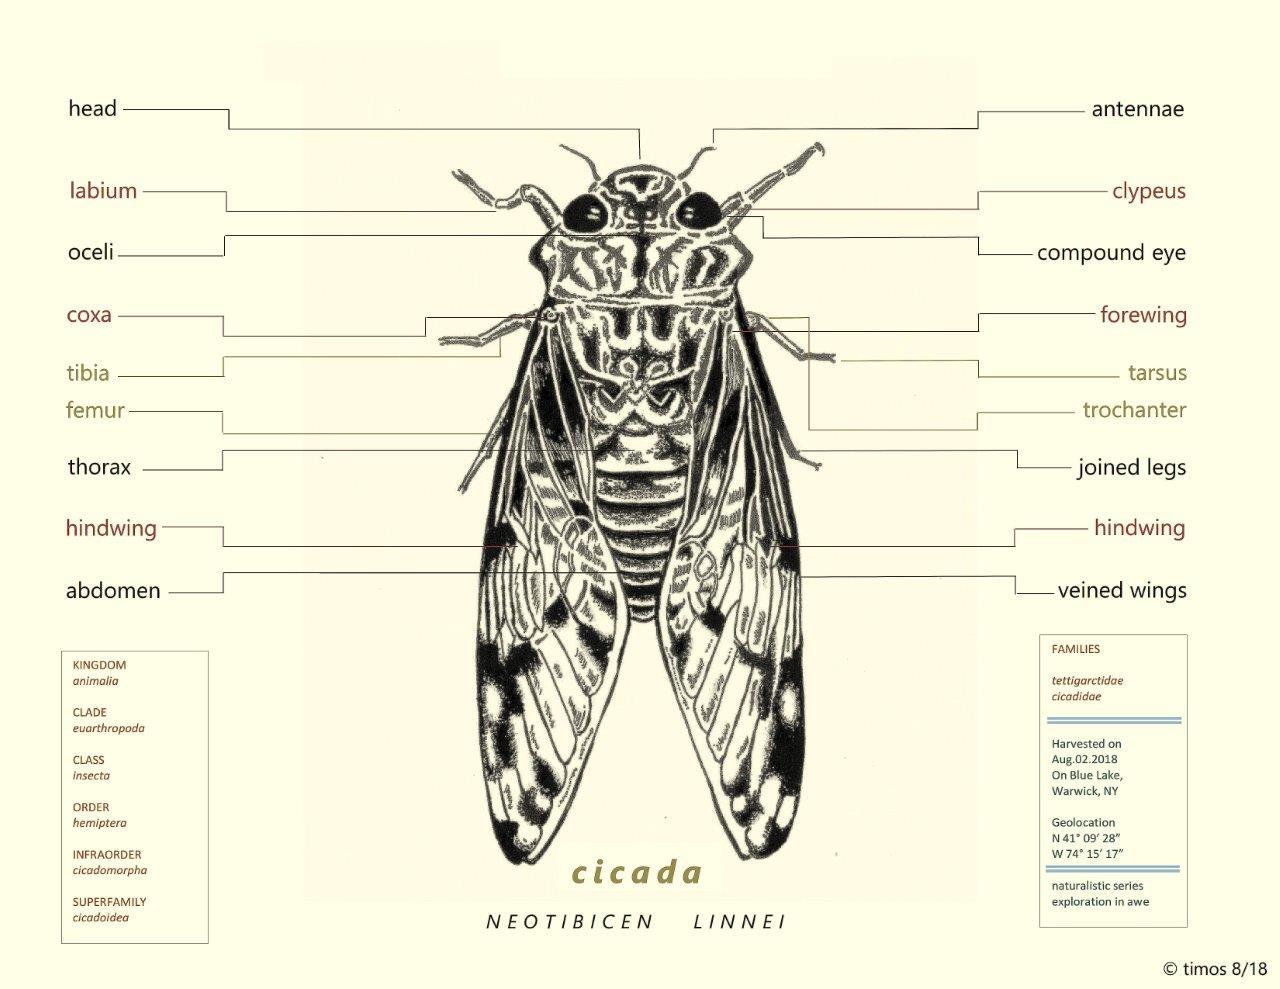 of cicadas, etc